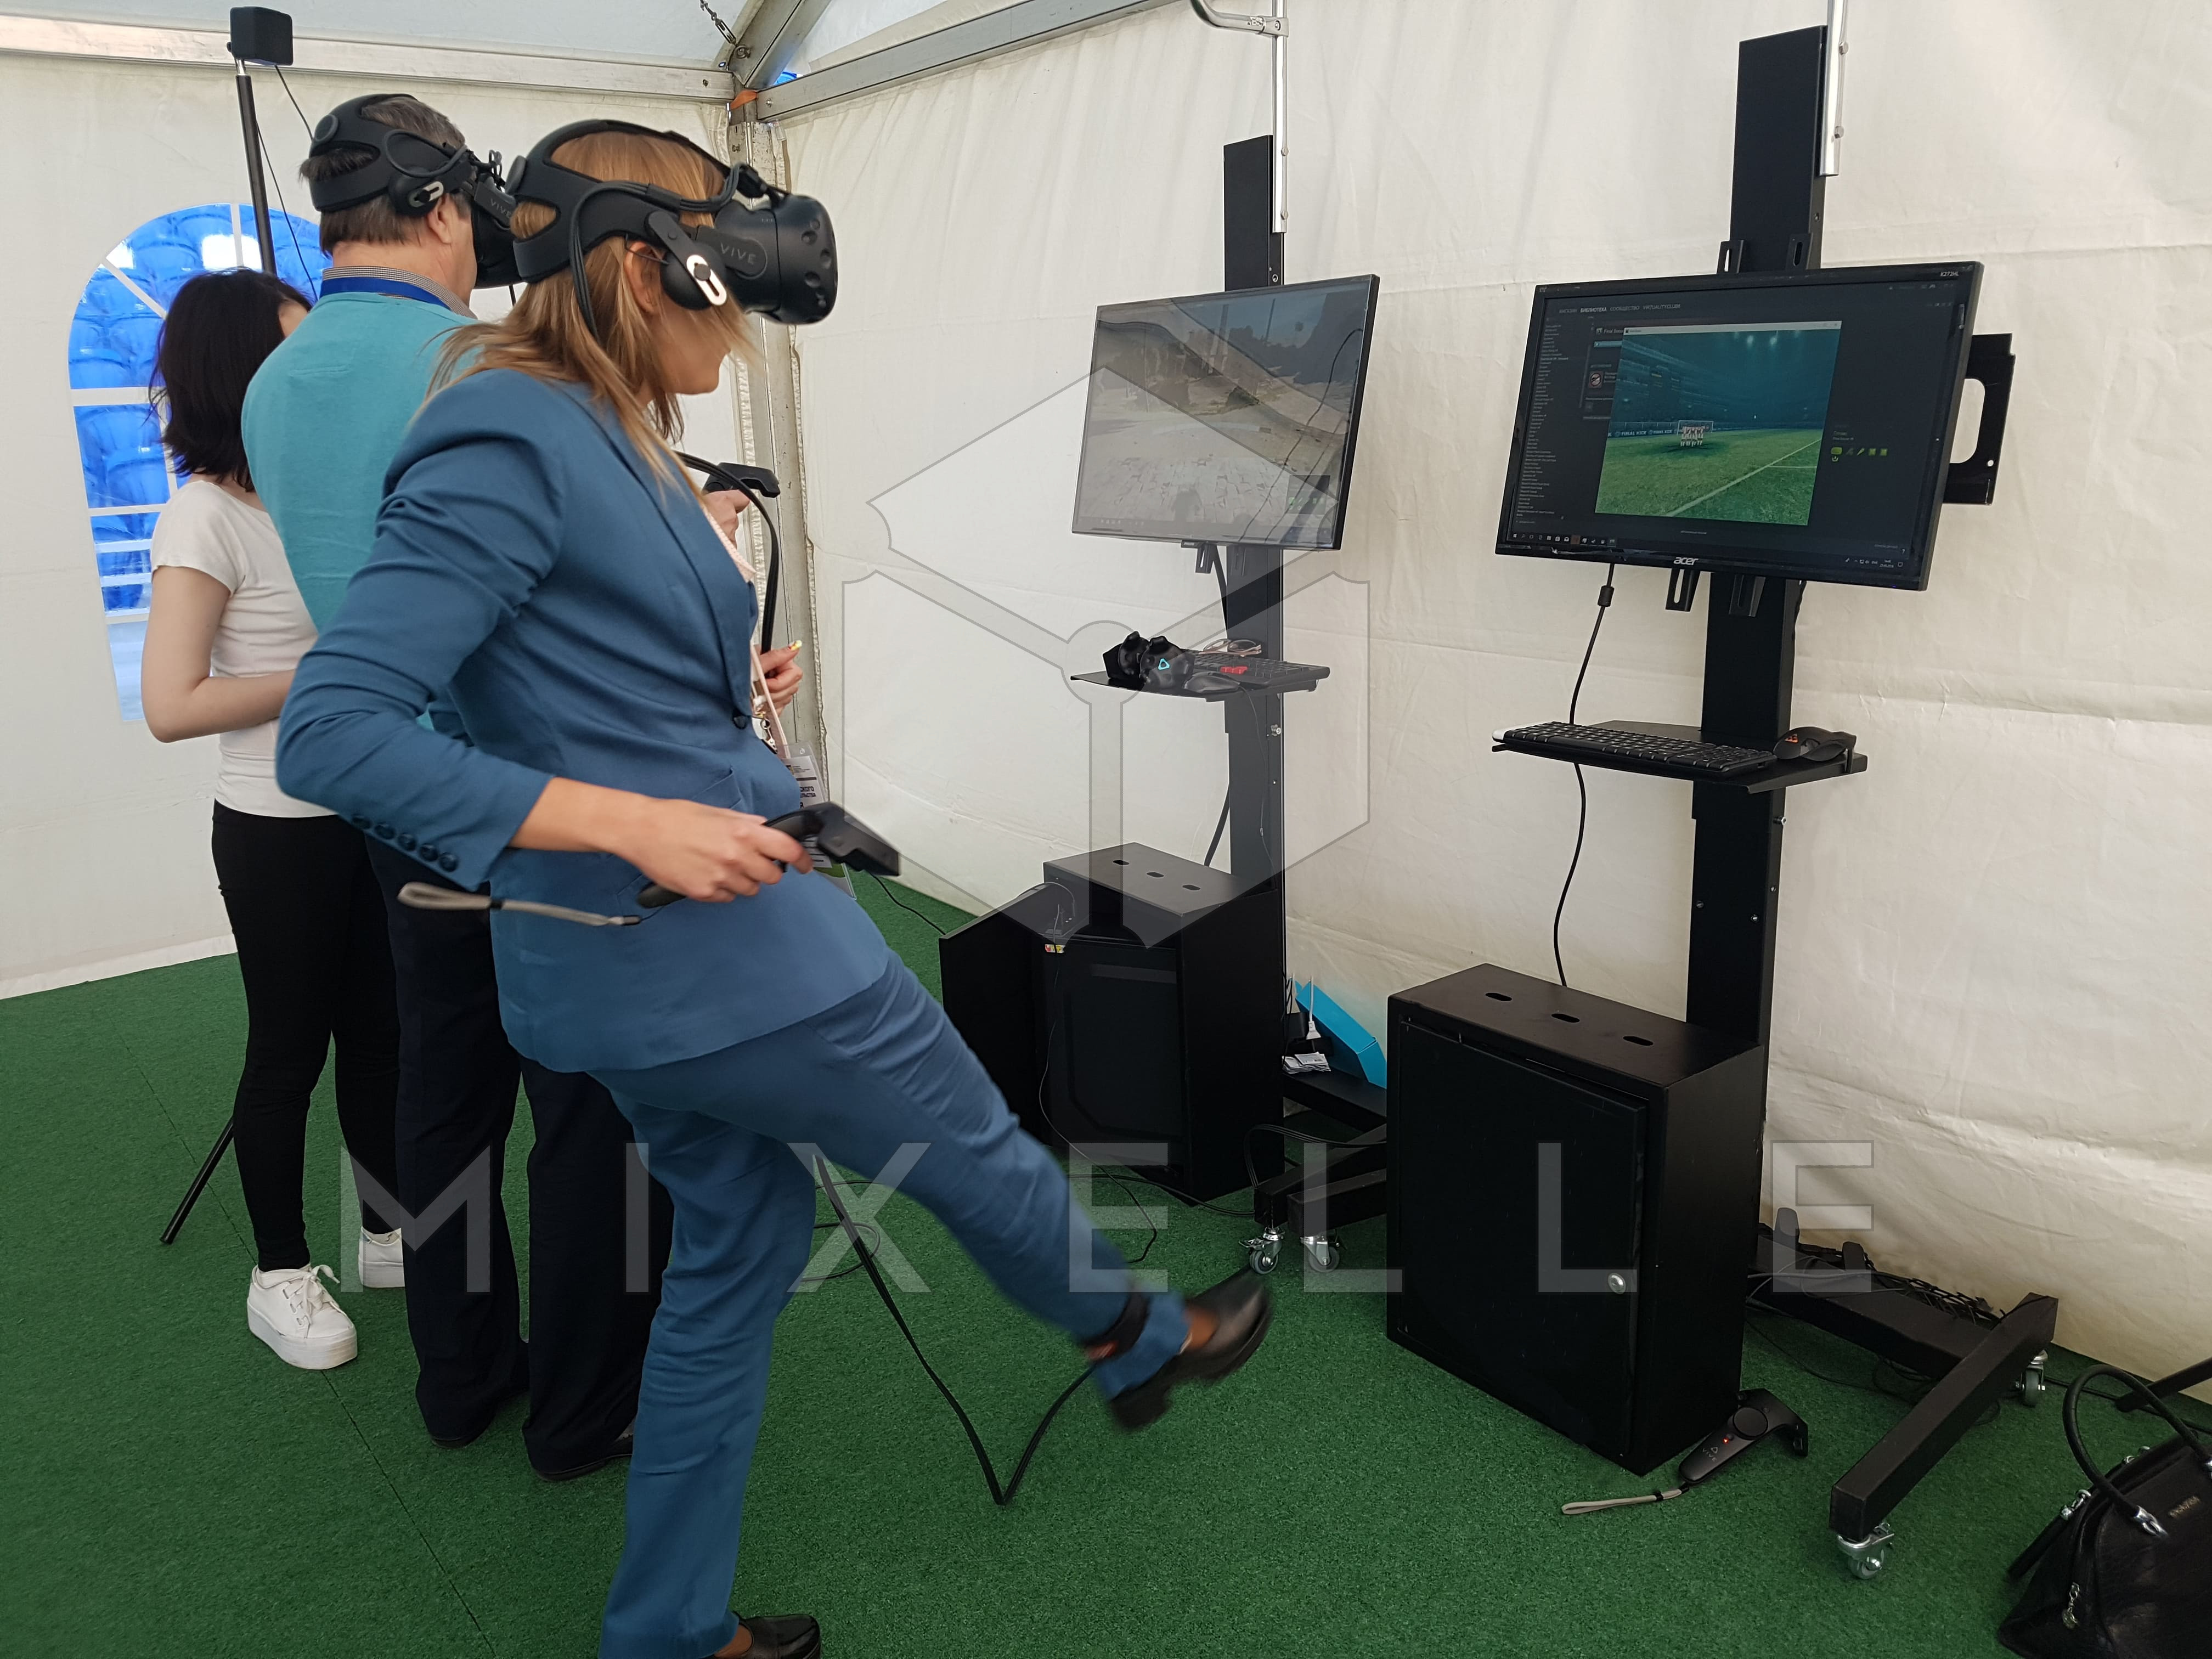 Аренда аттракциона "VR Футбол" на выездное мероприятие